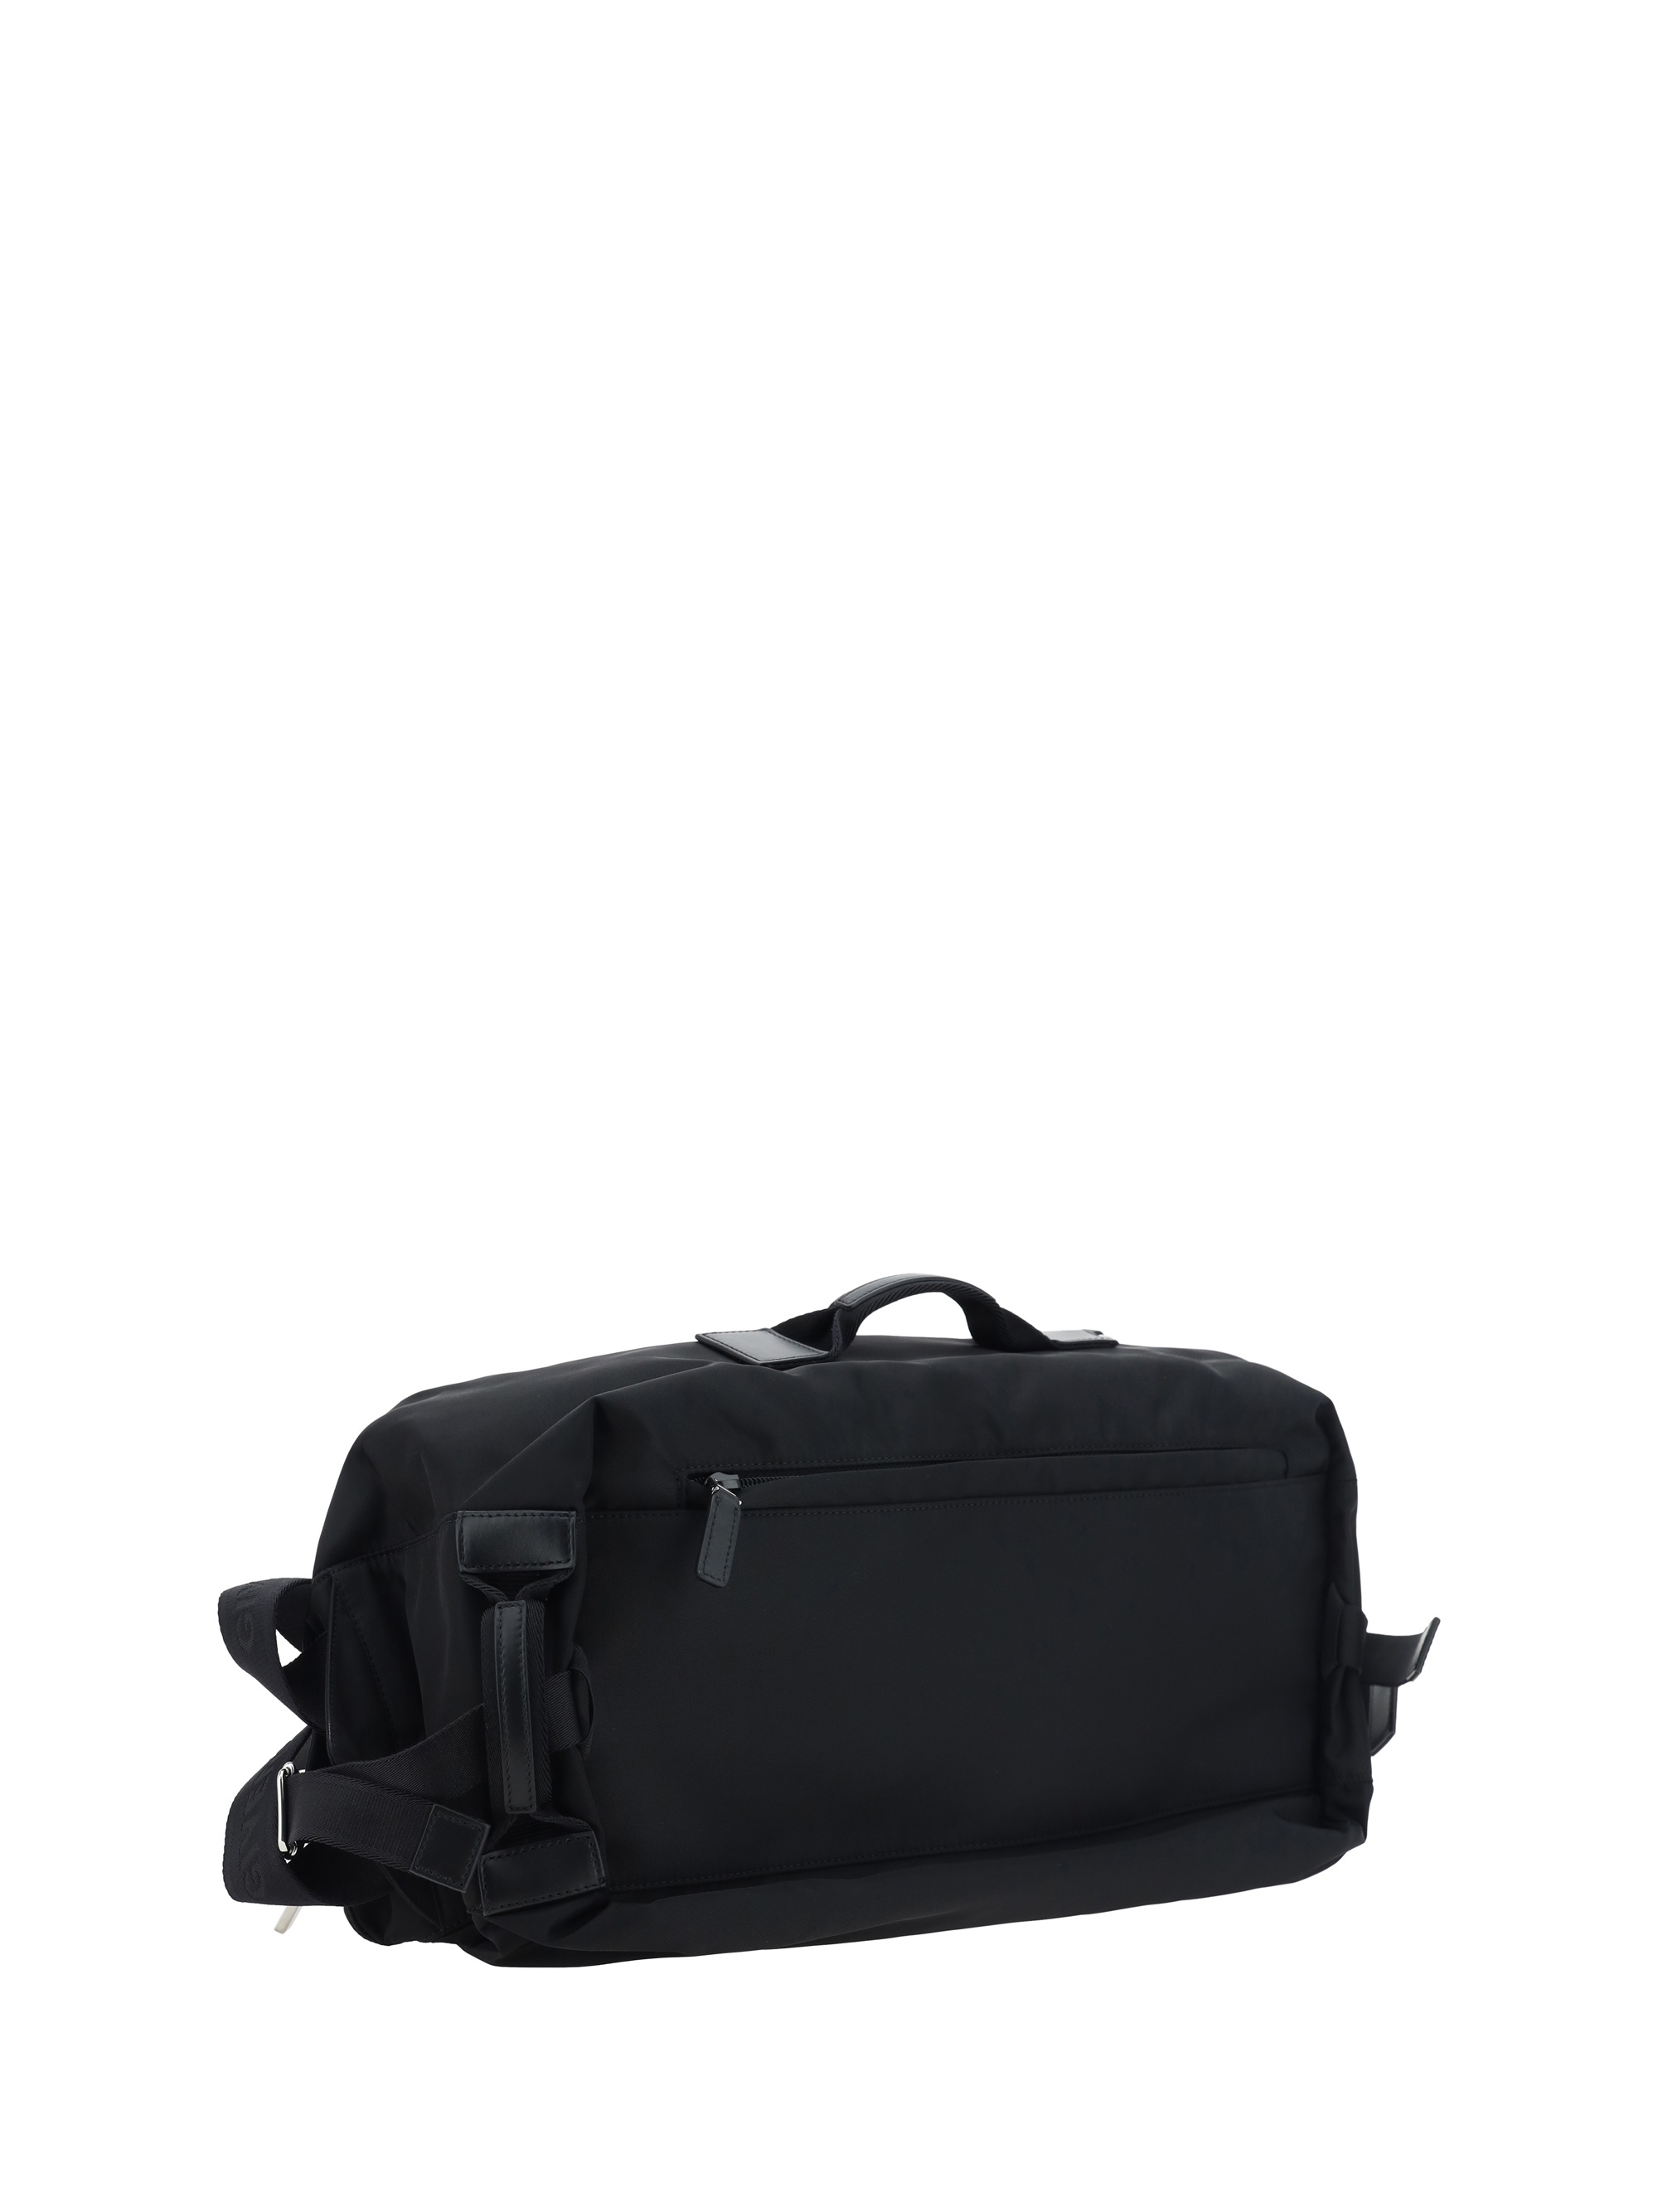 G-zip Backpack - 3